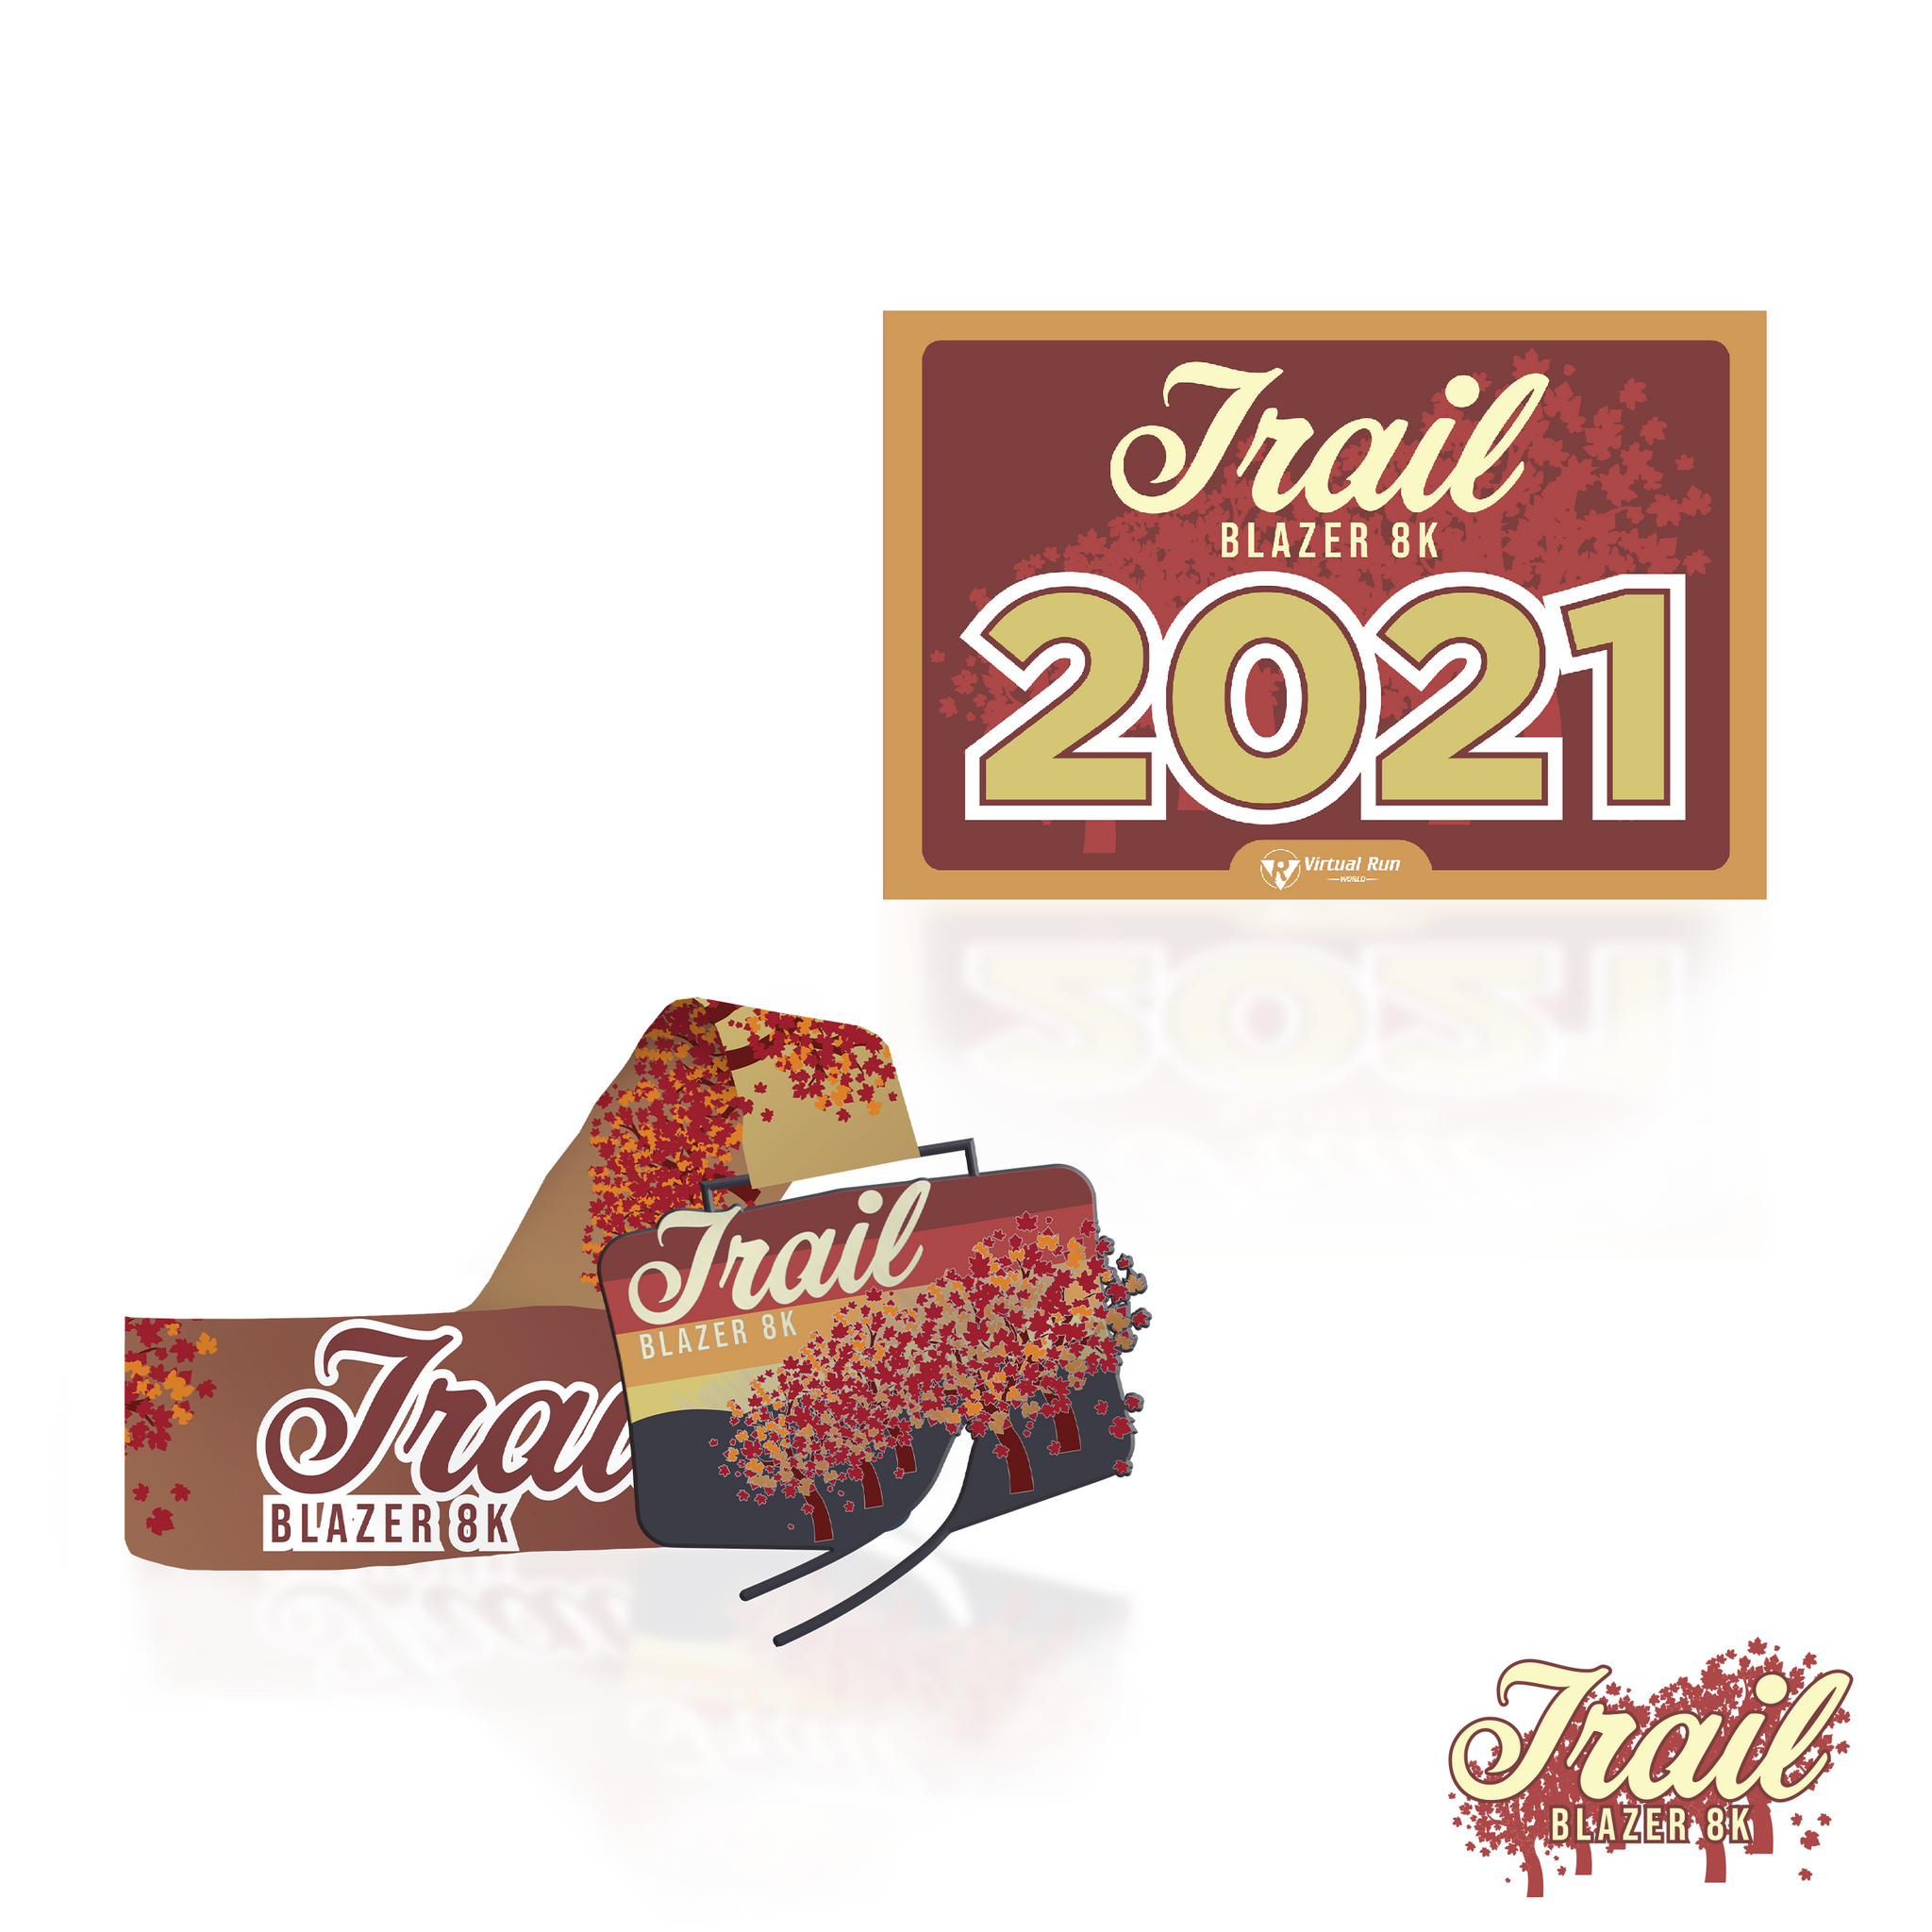 Trail Blazer 8k - Entry + Medal